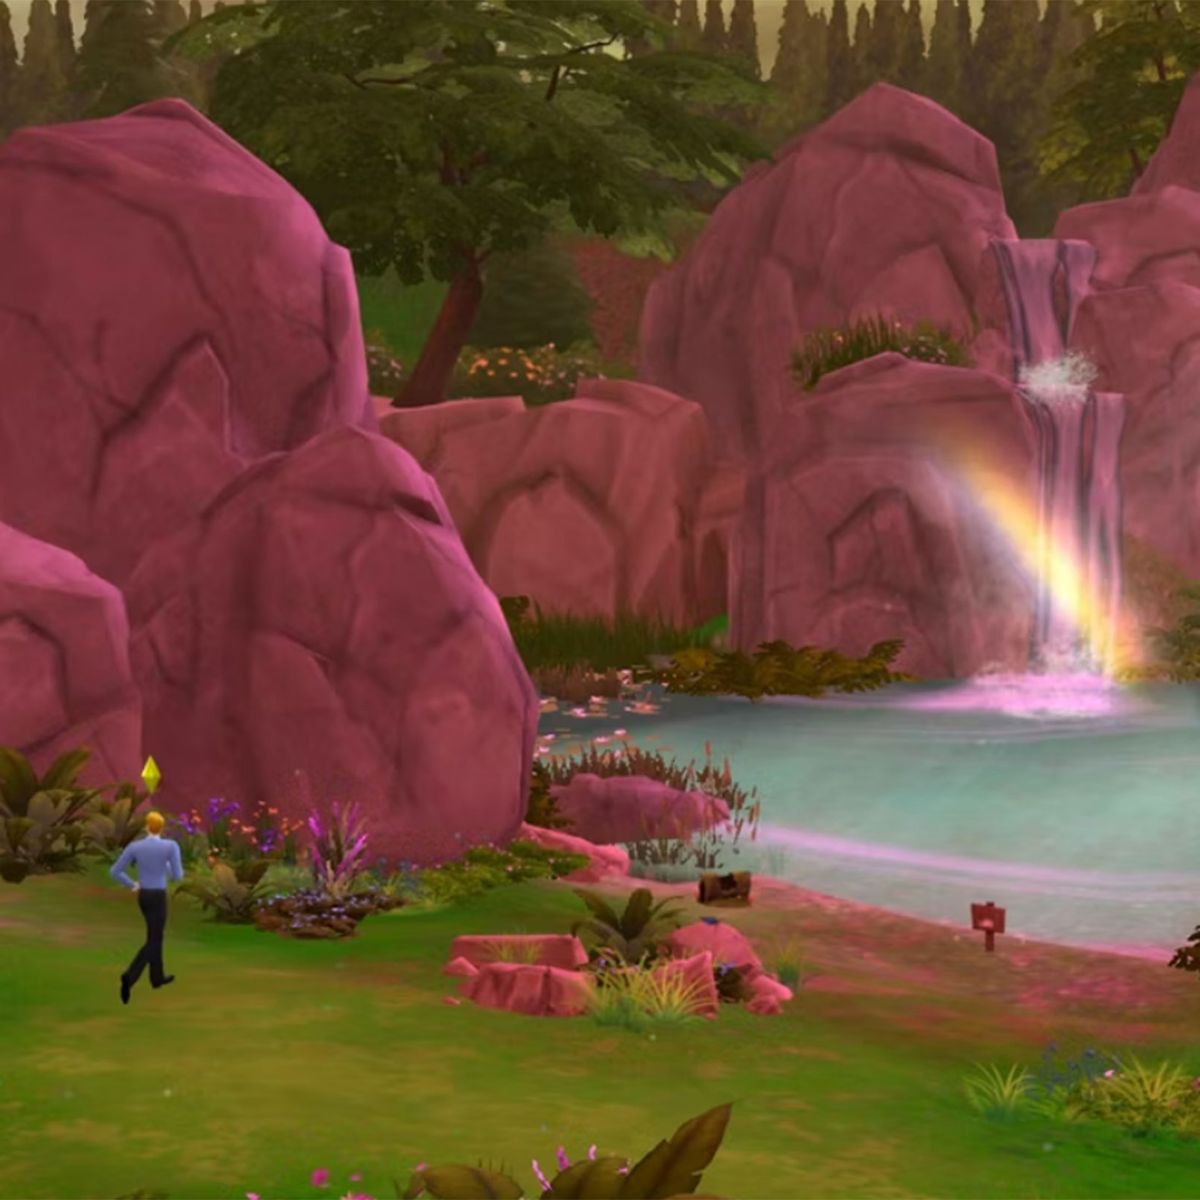 Lugares Secretos De Los Sims 4 Parte 1